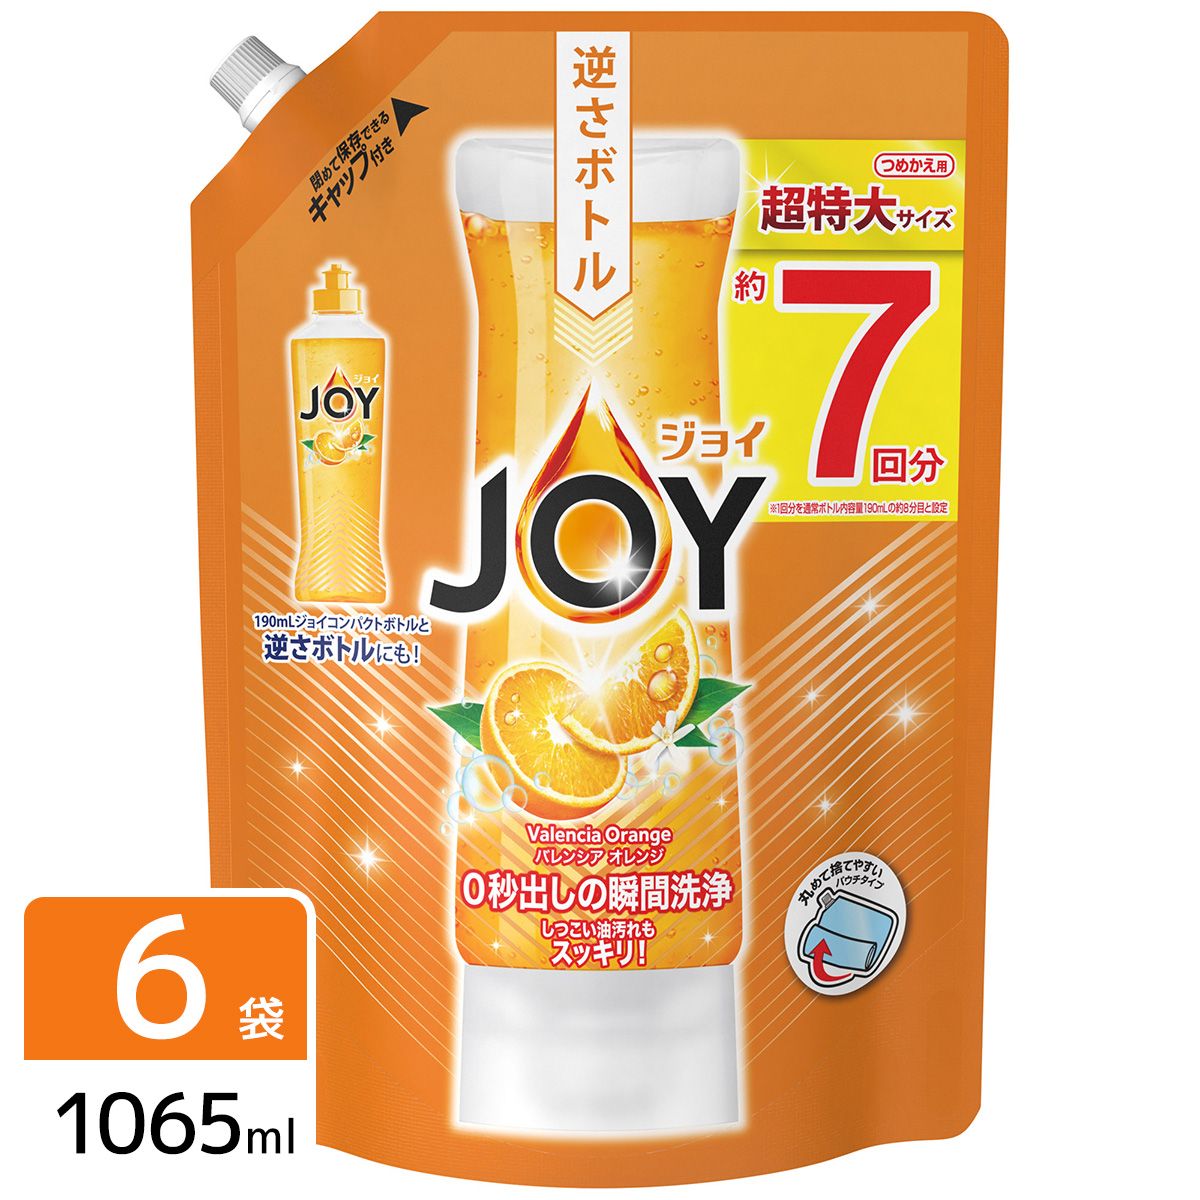 ［在庫限り特価］ジョイ コンパクト 食器用洗剤 バレンシアオレンジの香り 超特大 1065mL×6袋